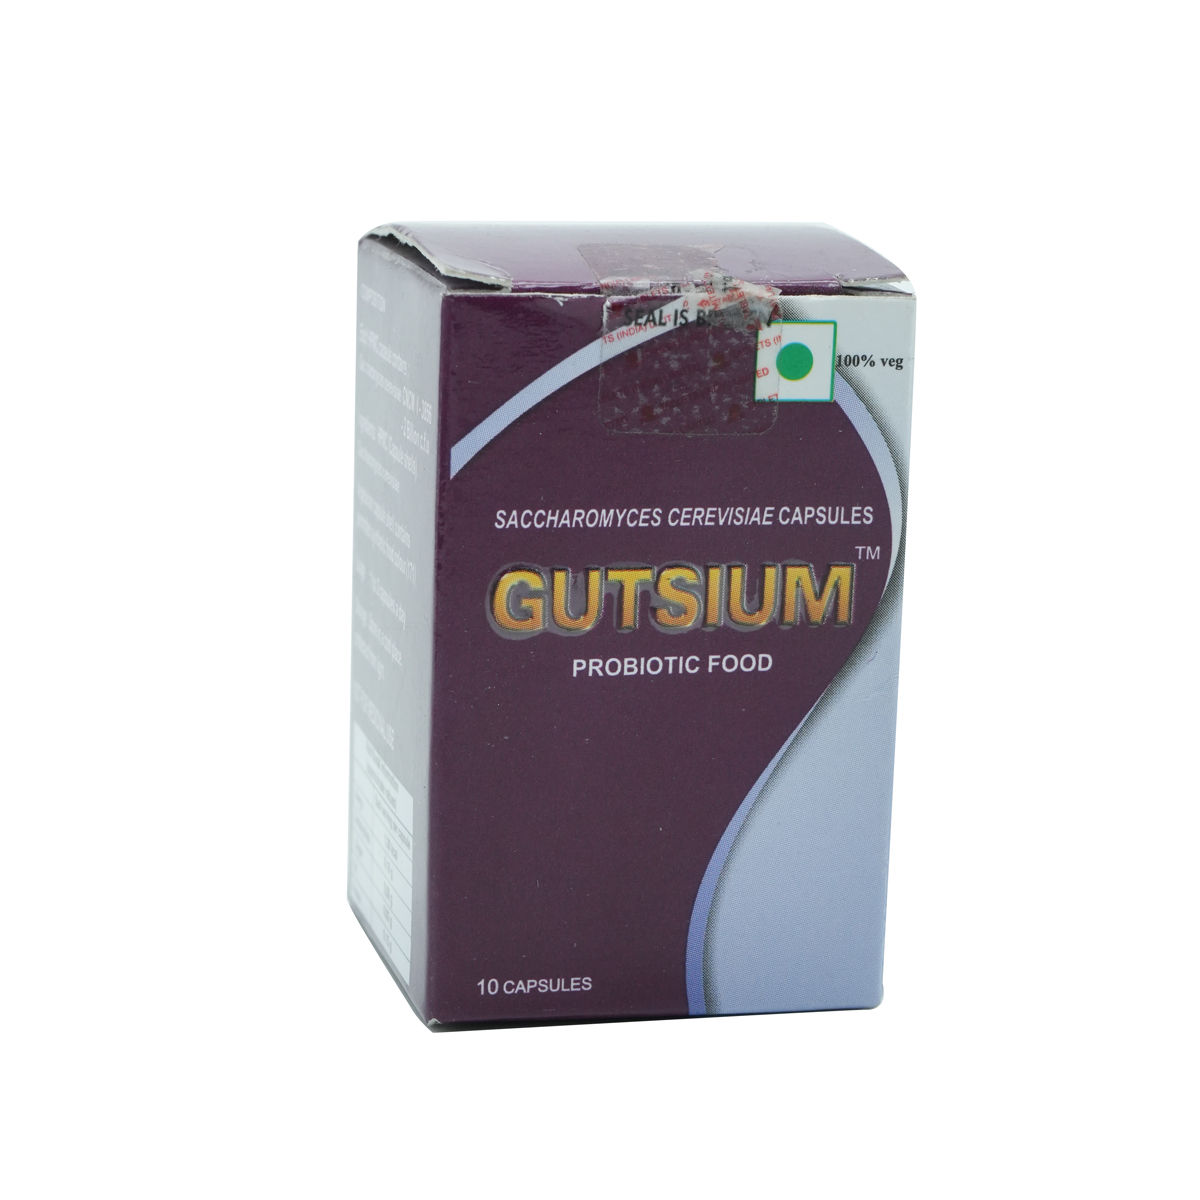 Gutsium Capsule 10's, Pack of 10 CAPSULES